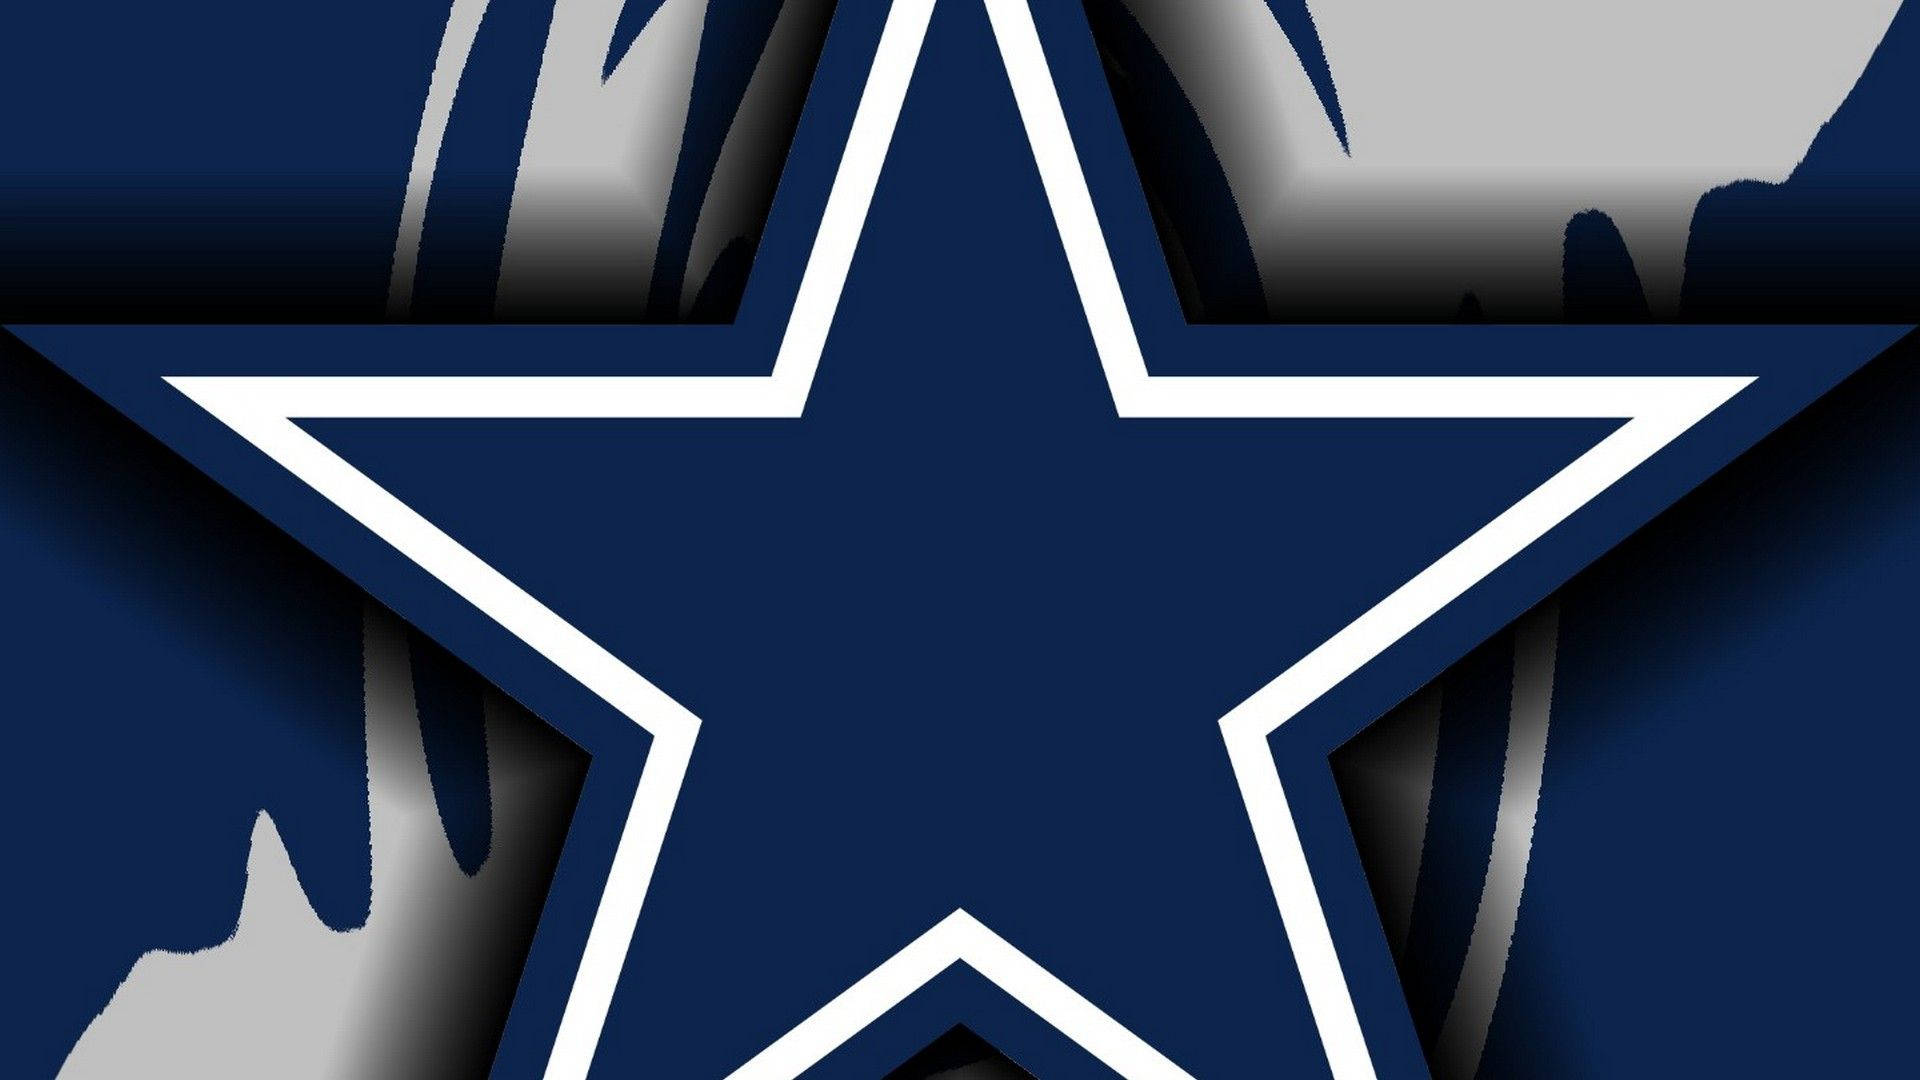 Dallas Cowboys Logo With Streaks Wallpaper